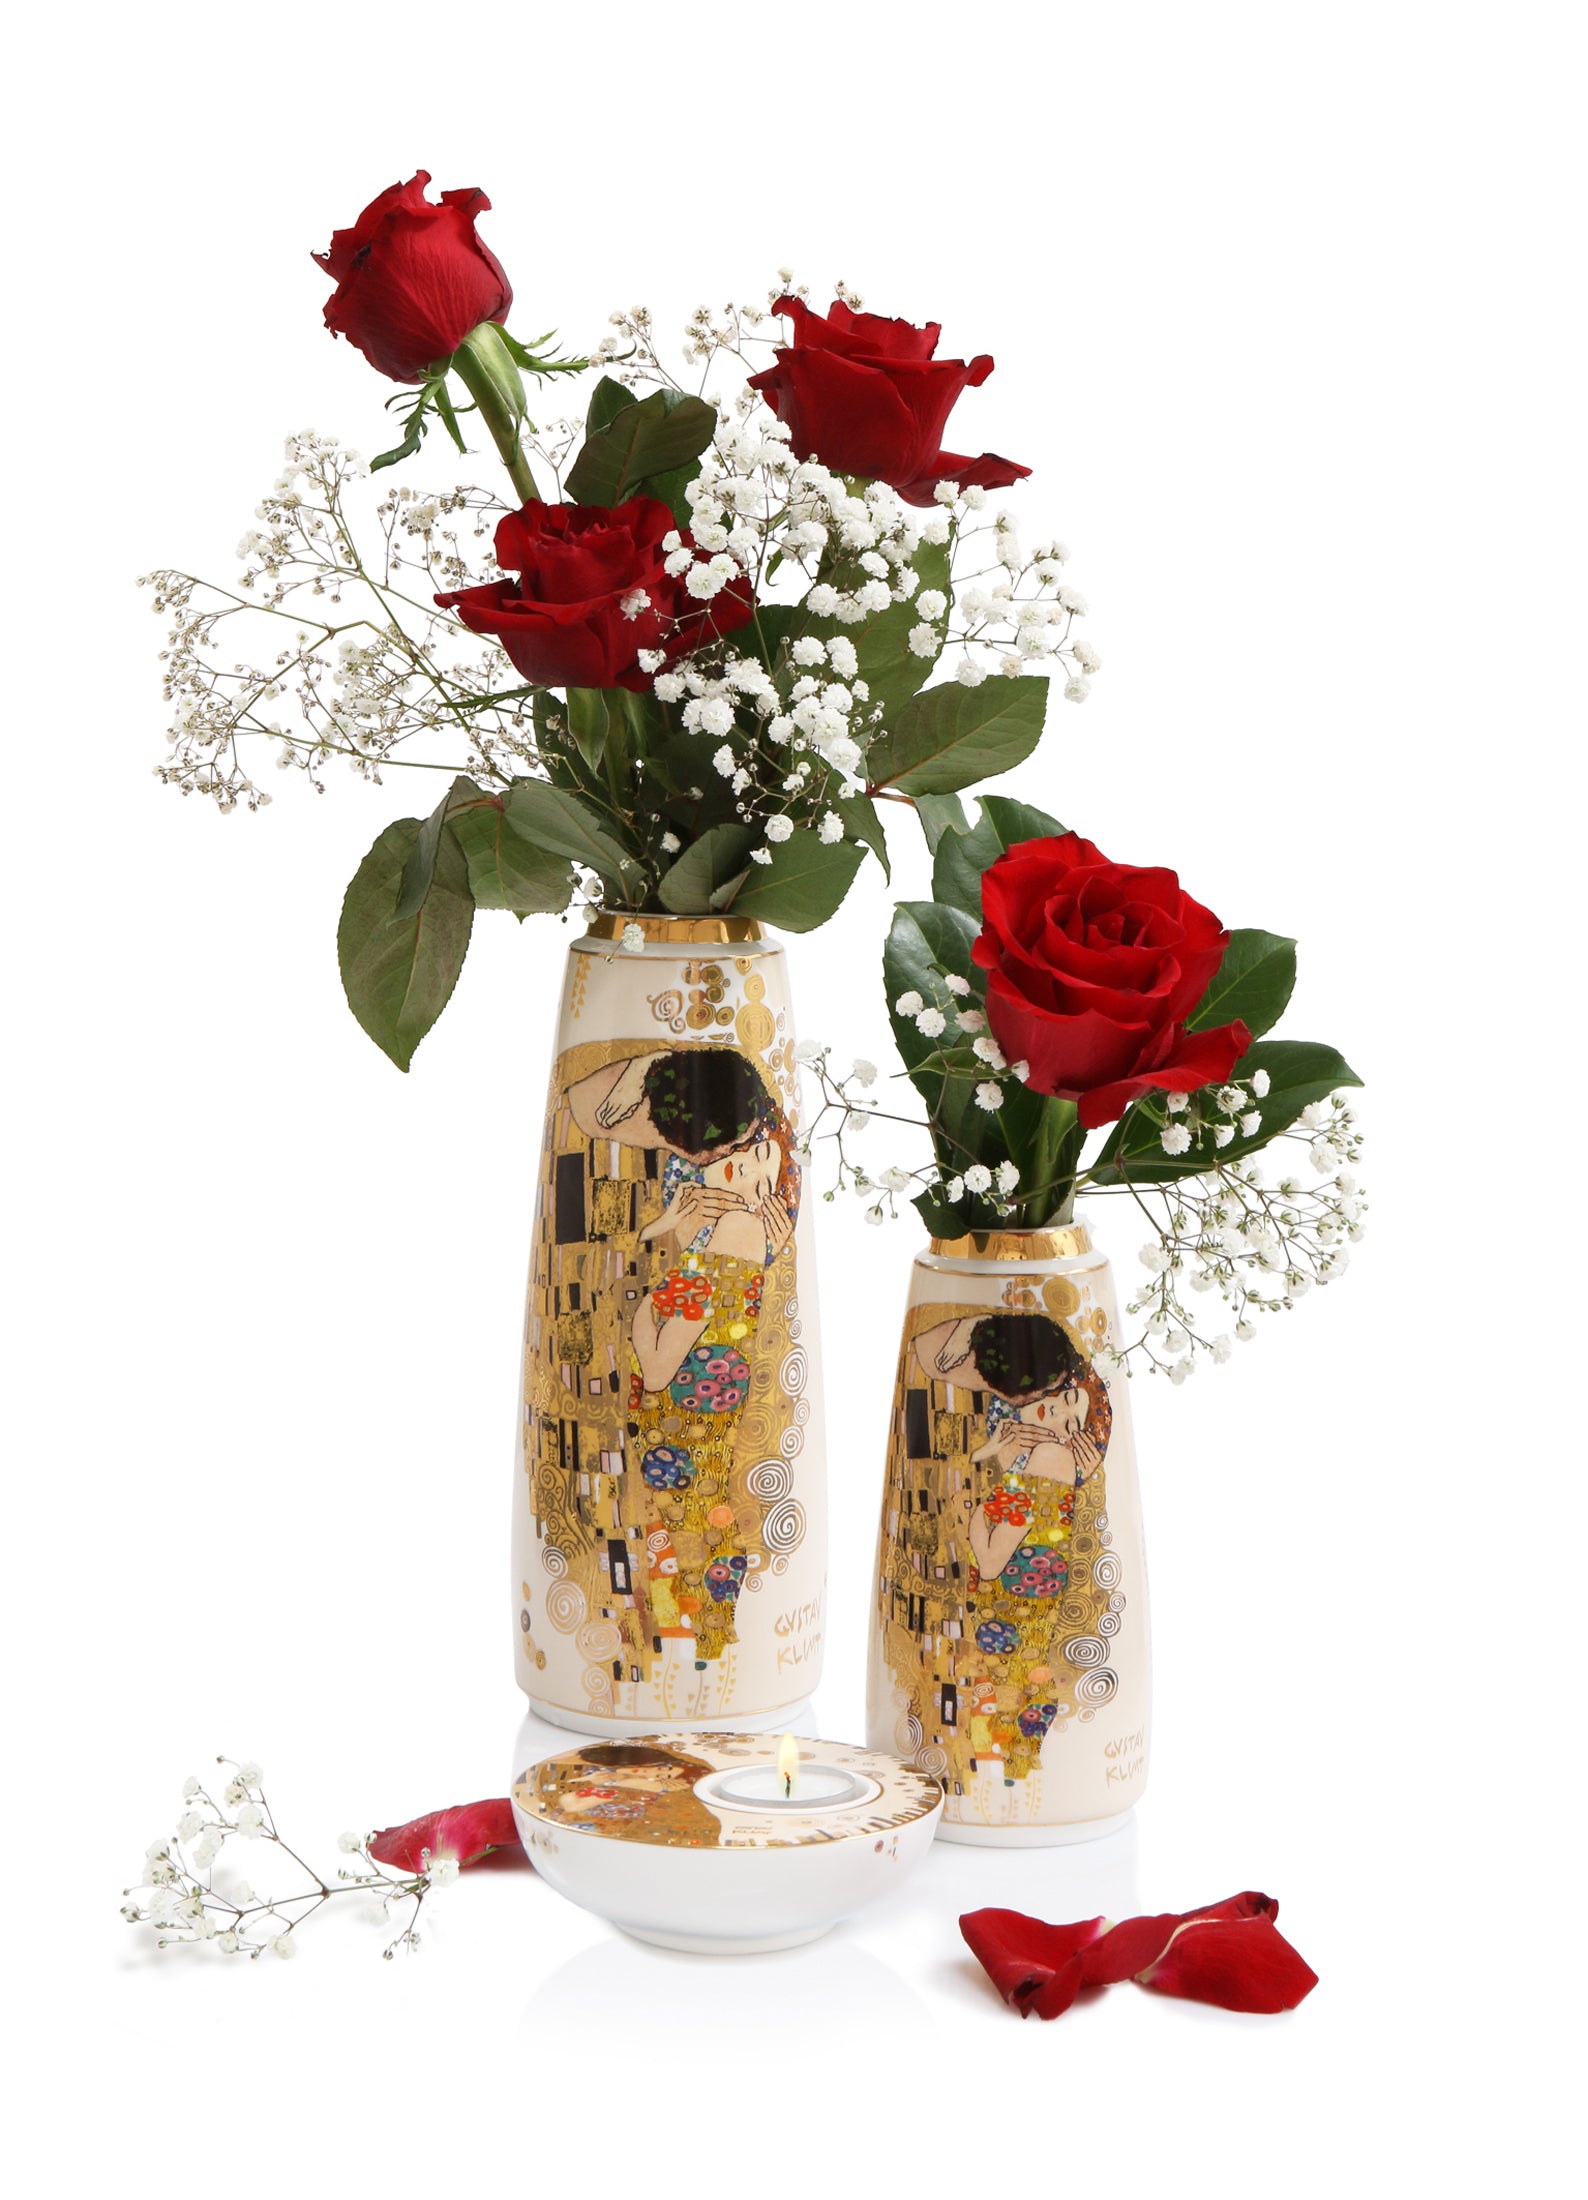 Goebel Artis Orbis Porzellan Vase 18,5cm "Der Kuss" von Gustav Klimt